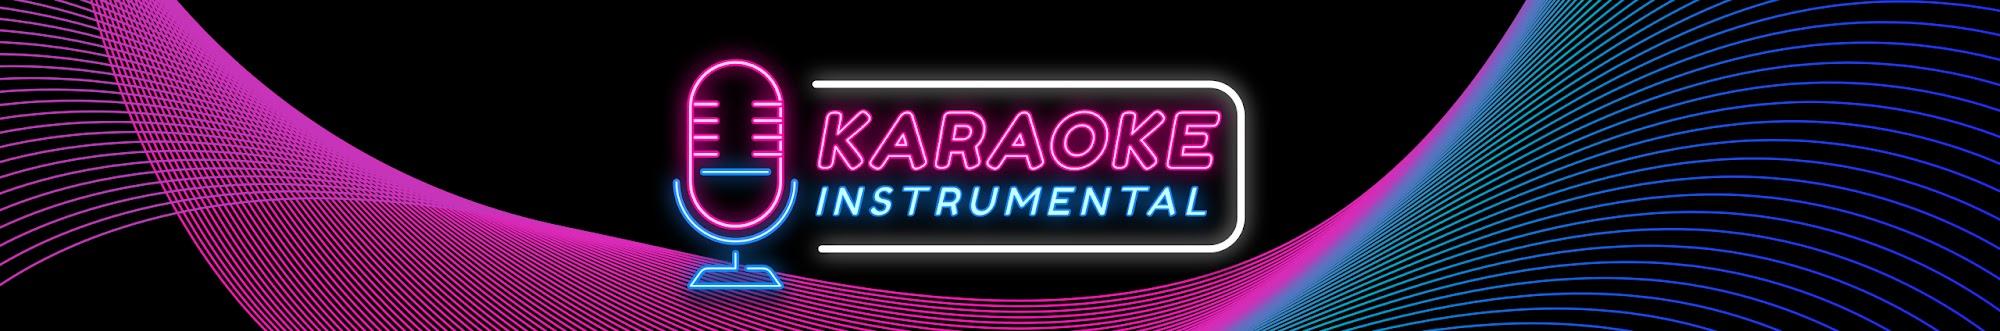 Karaoke Instrumental